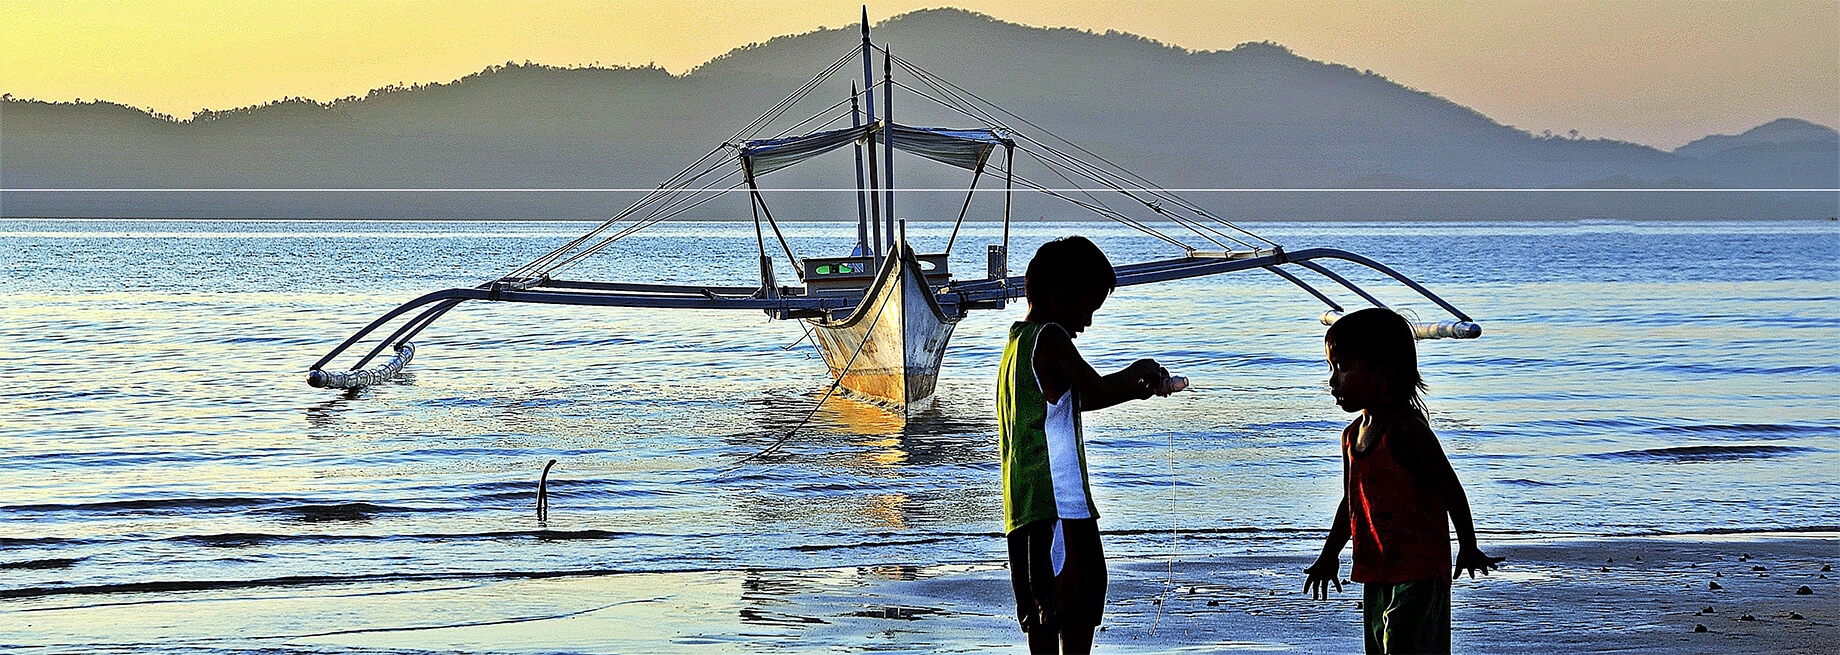 Sea-Heritage-Philippines-plage